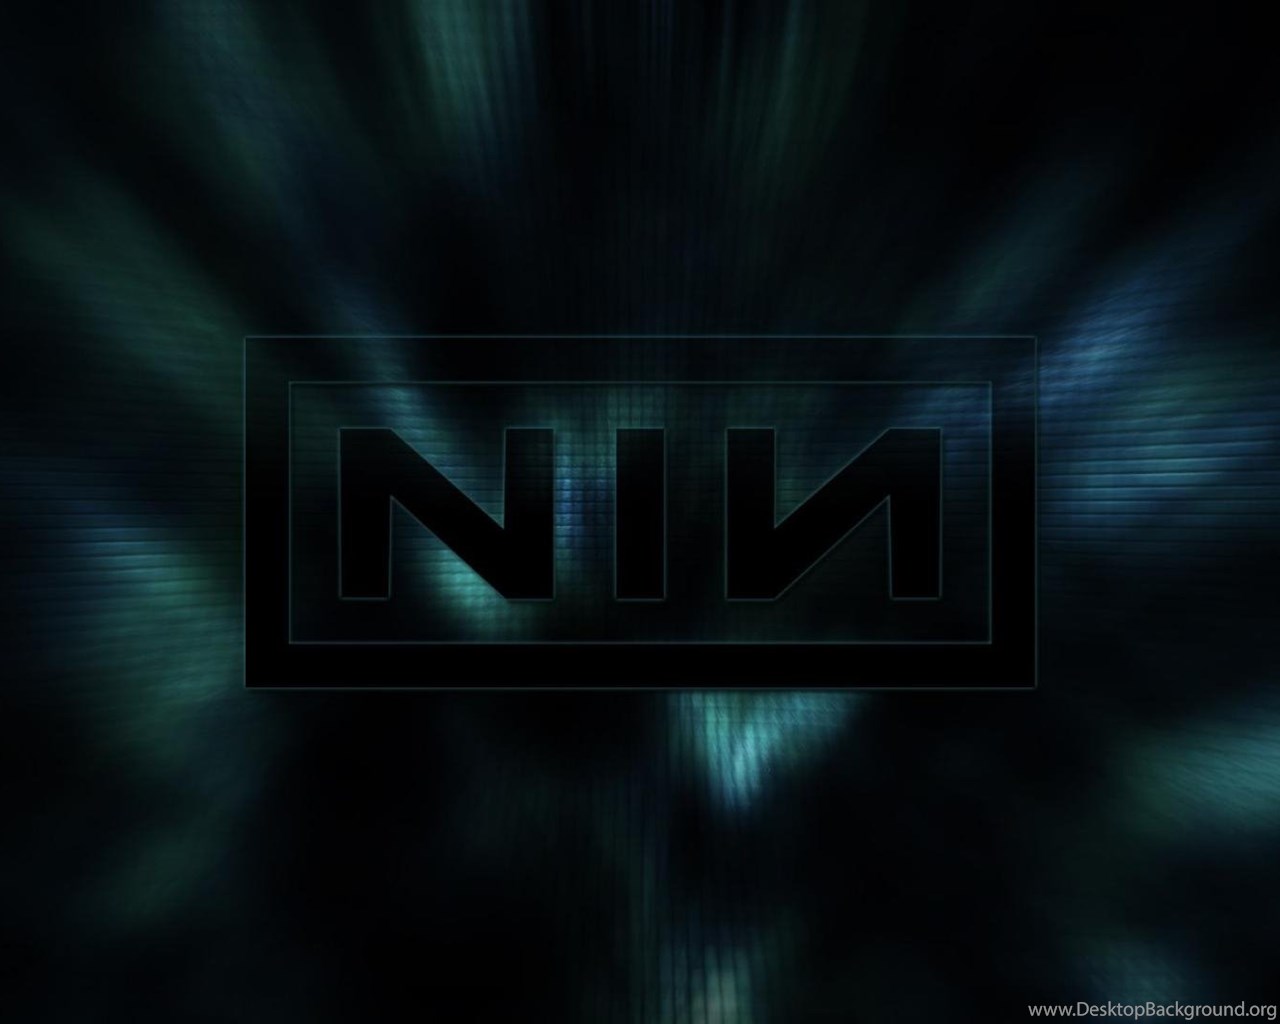 Nine Inch Nails - Head Like A Hole (Reaps Remix) - YouTube